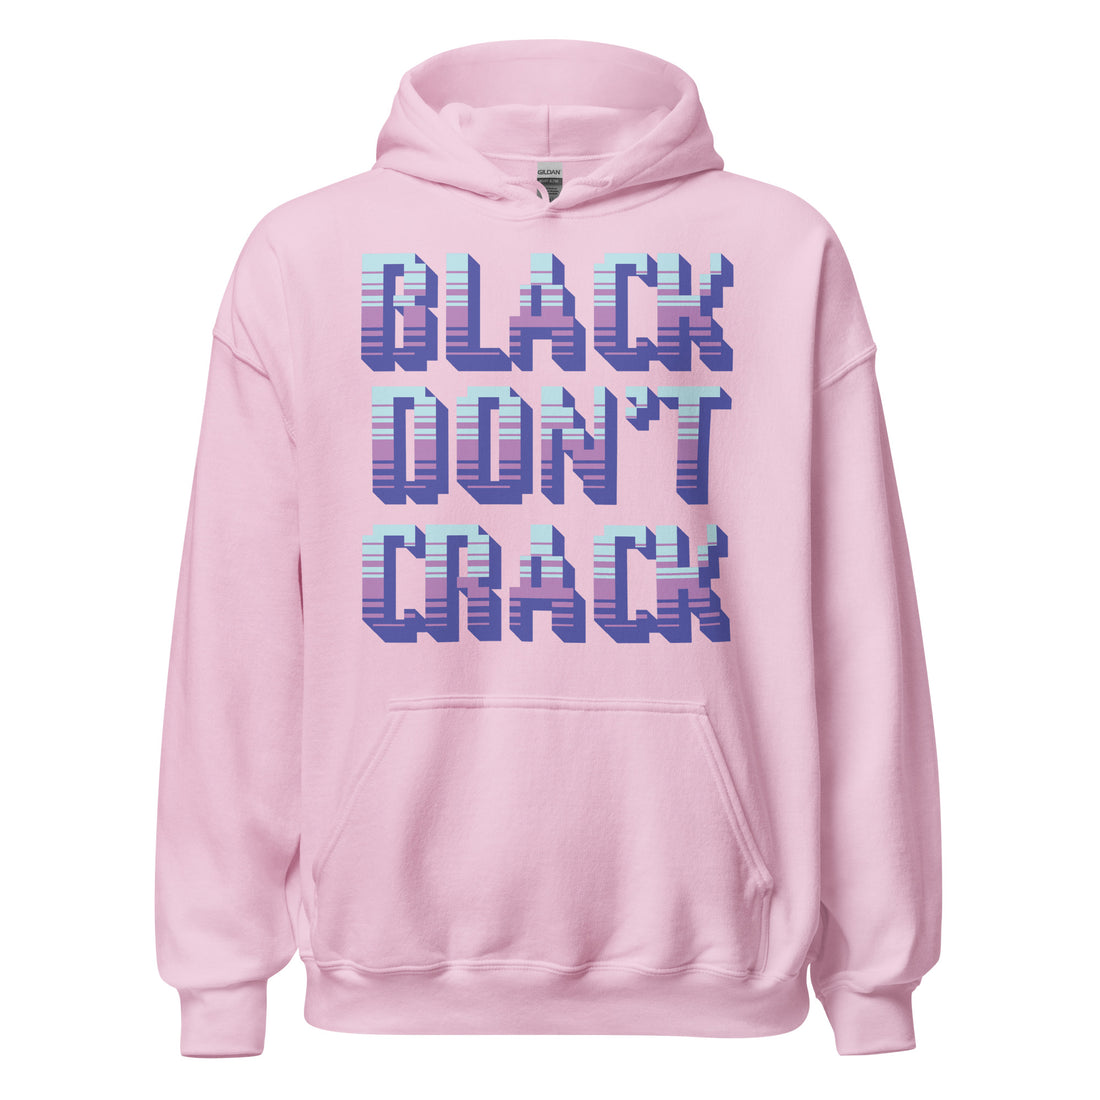 Black Don't Crack